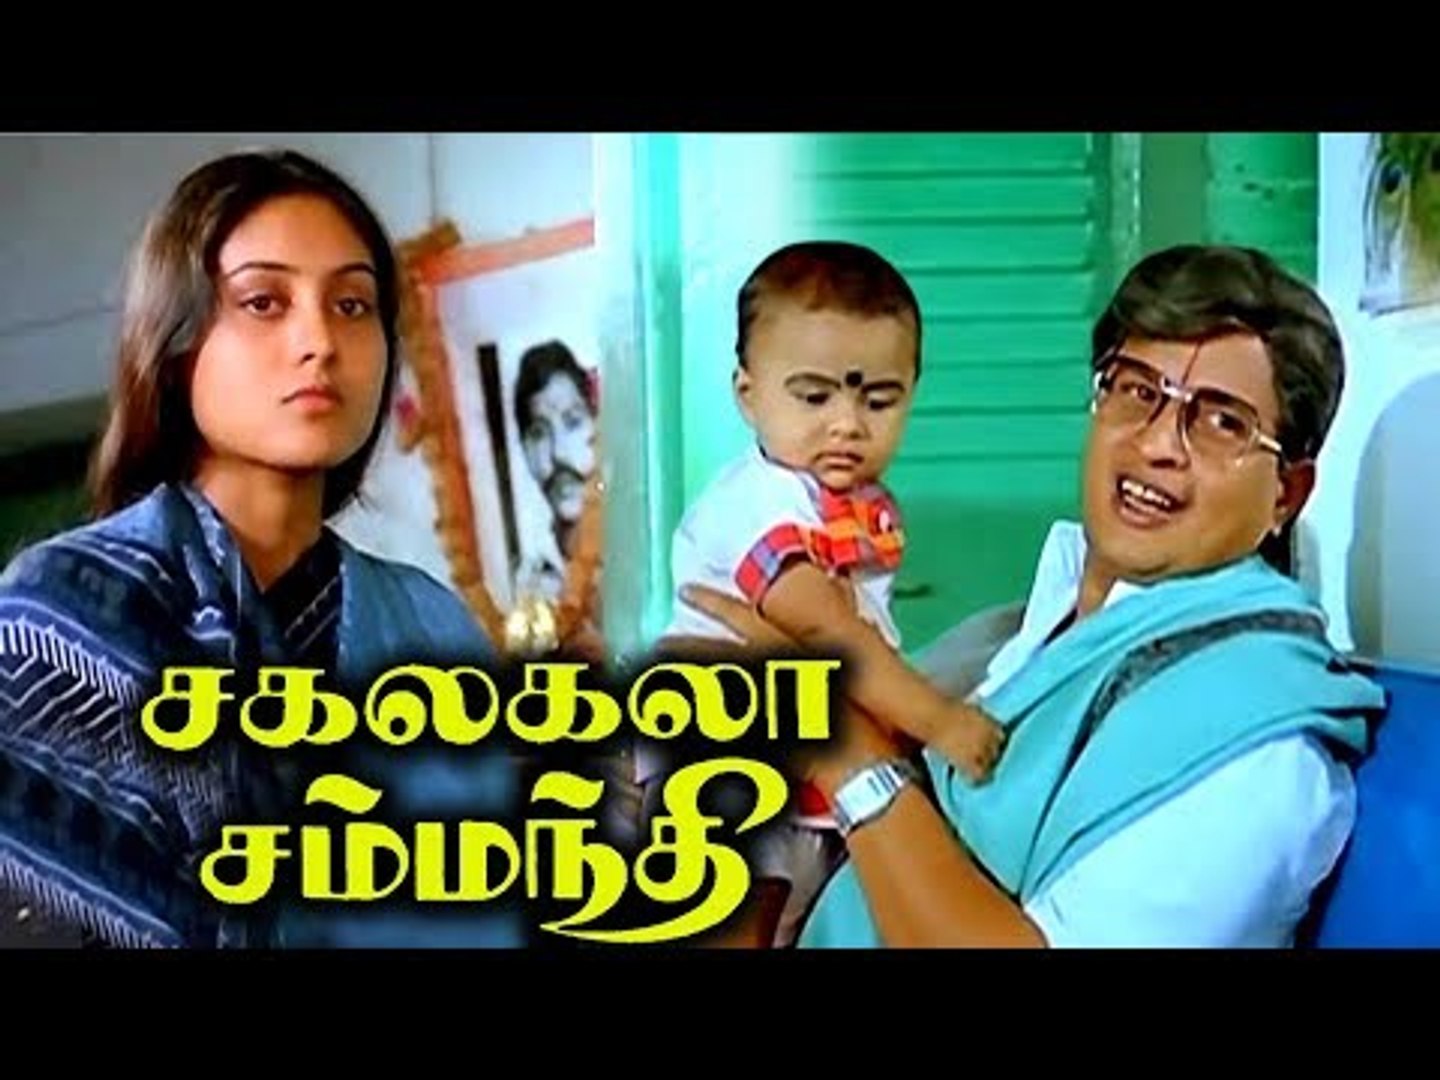 Sakalakala Samanthi Full Movie # Tamil Movies # Tamil Comedy Full Movies # Visu, Saranya & Manor